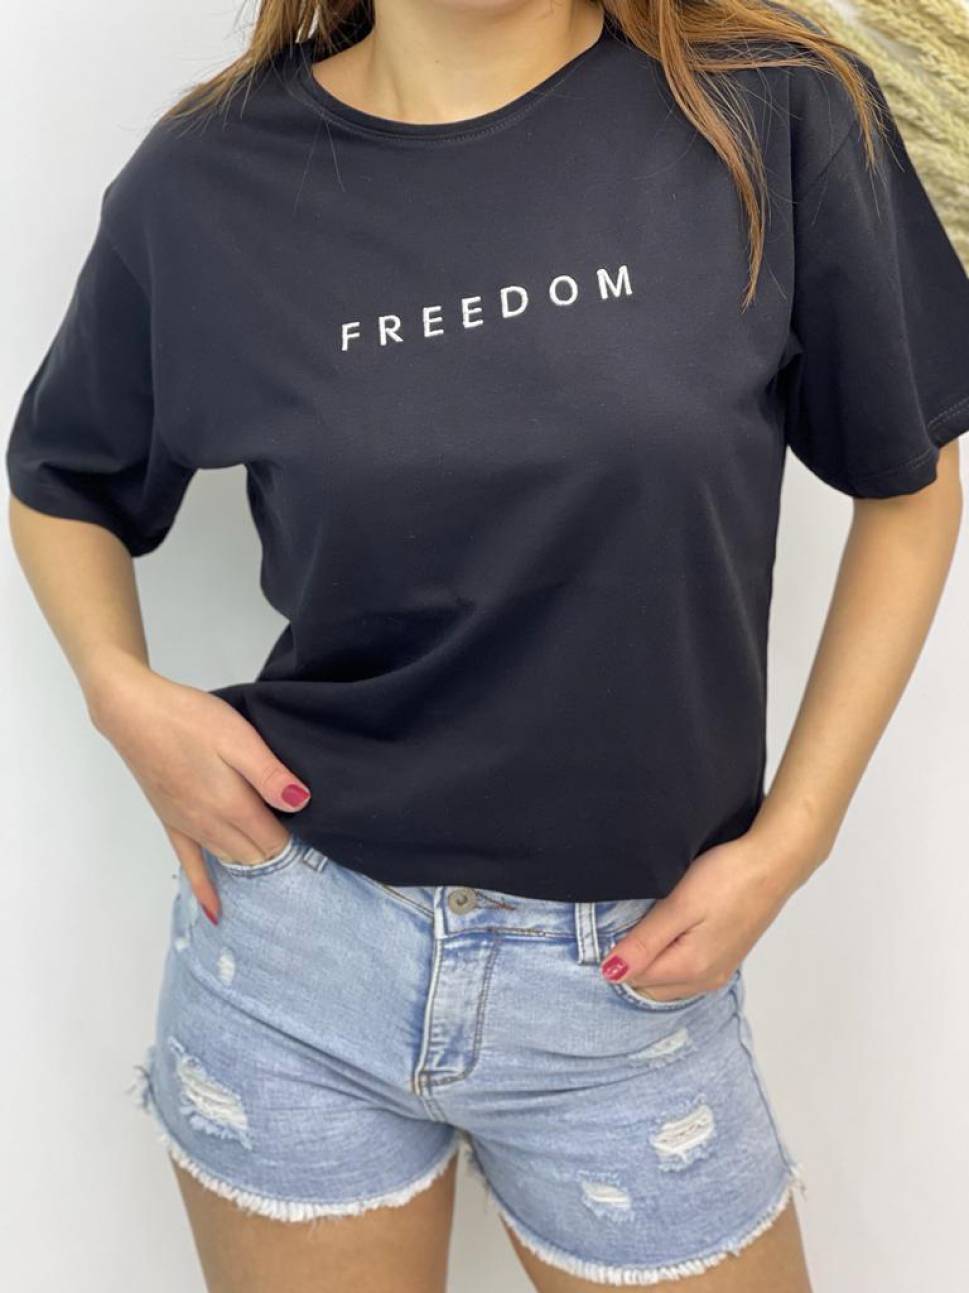 Laisvalaikio marškinėliai "Freedom"